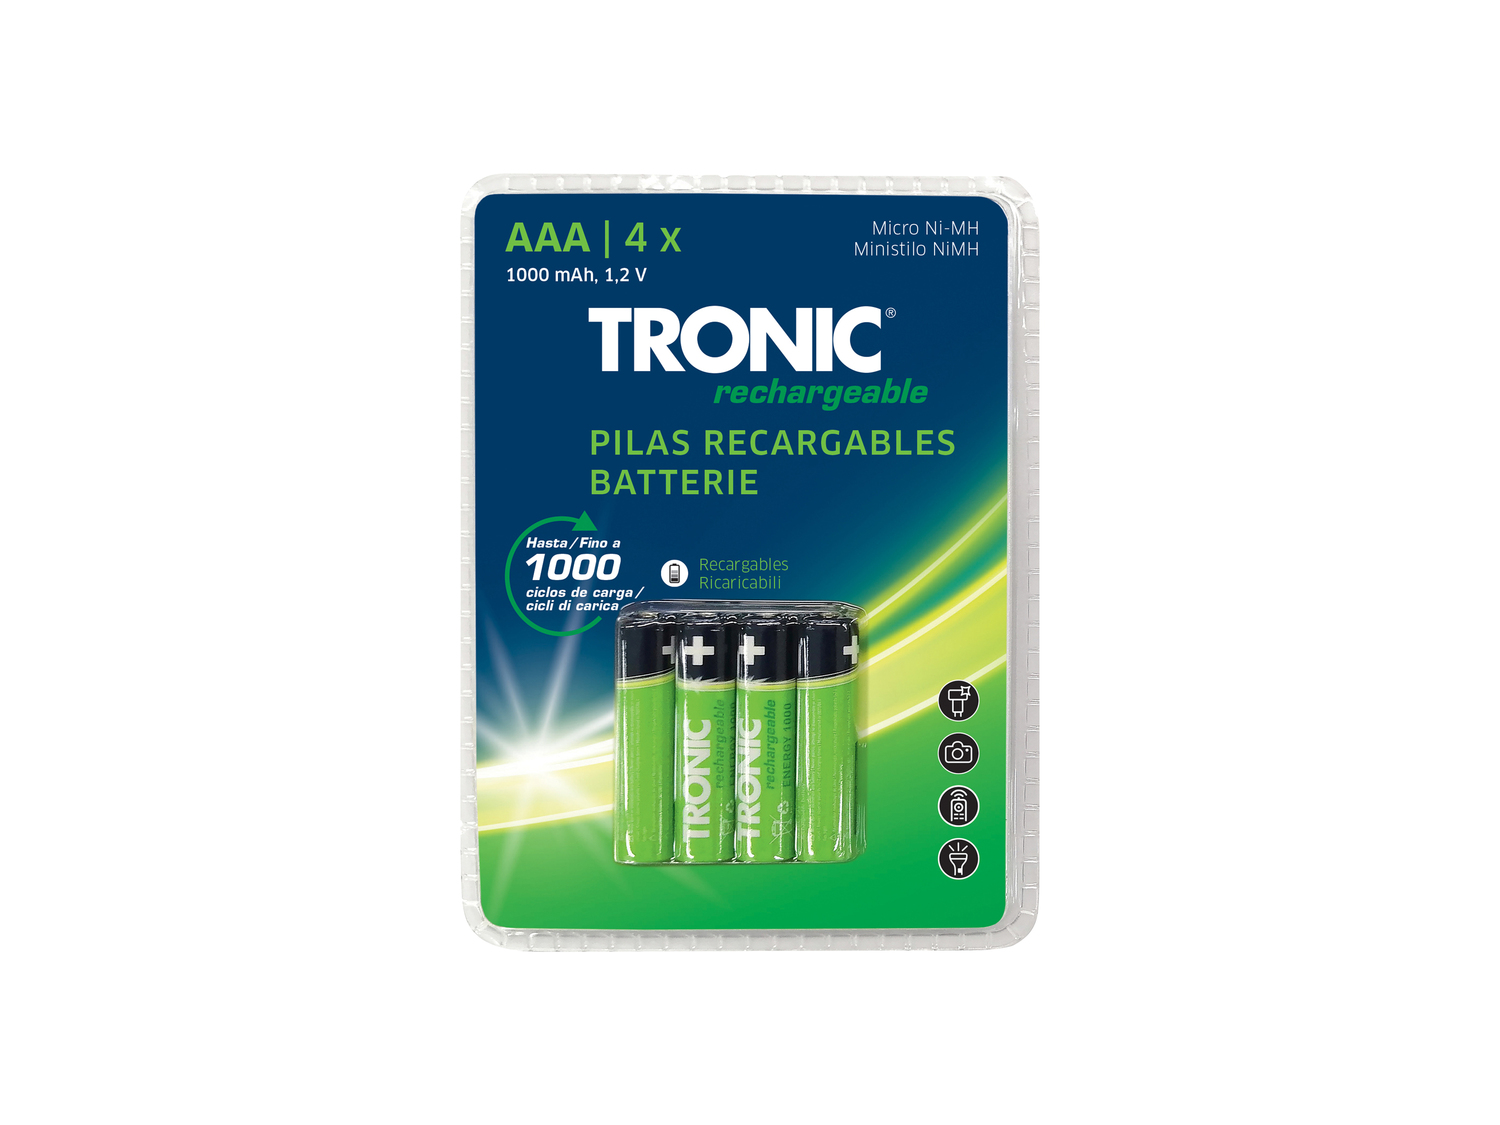 Batterie ricaricabili Tronic, prezzo 3.99 &#8364;  
4 pezzi
Caratteristiche